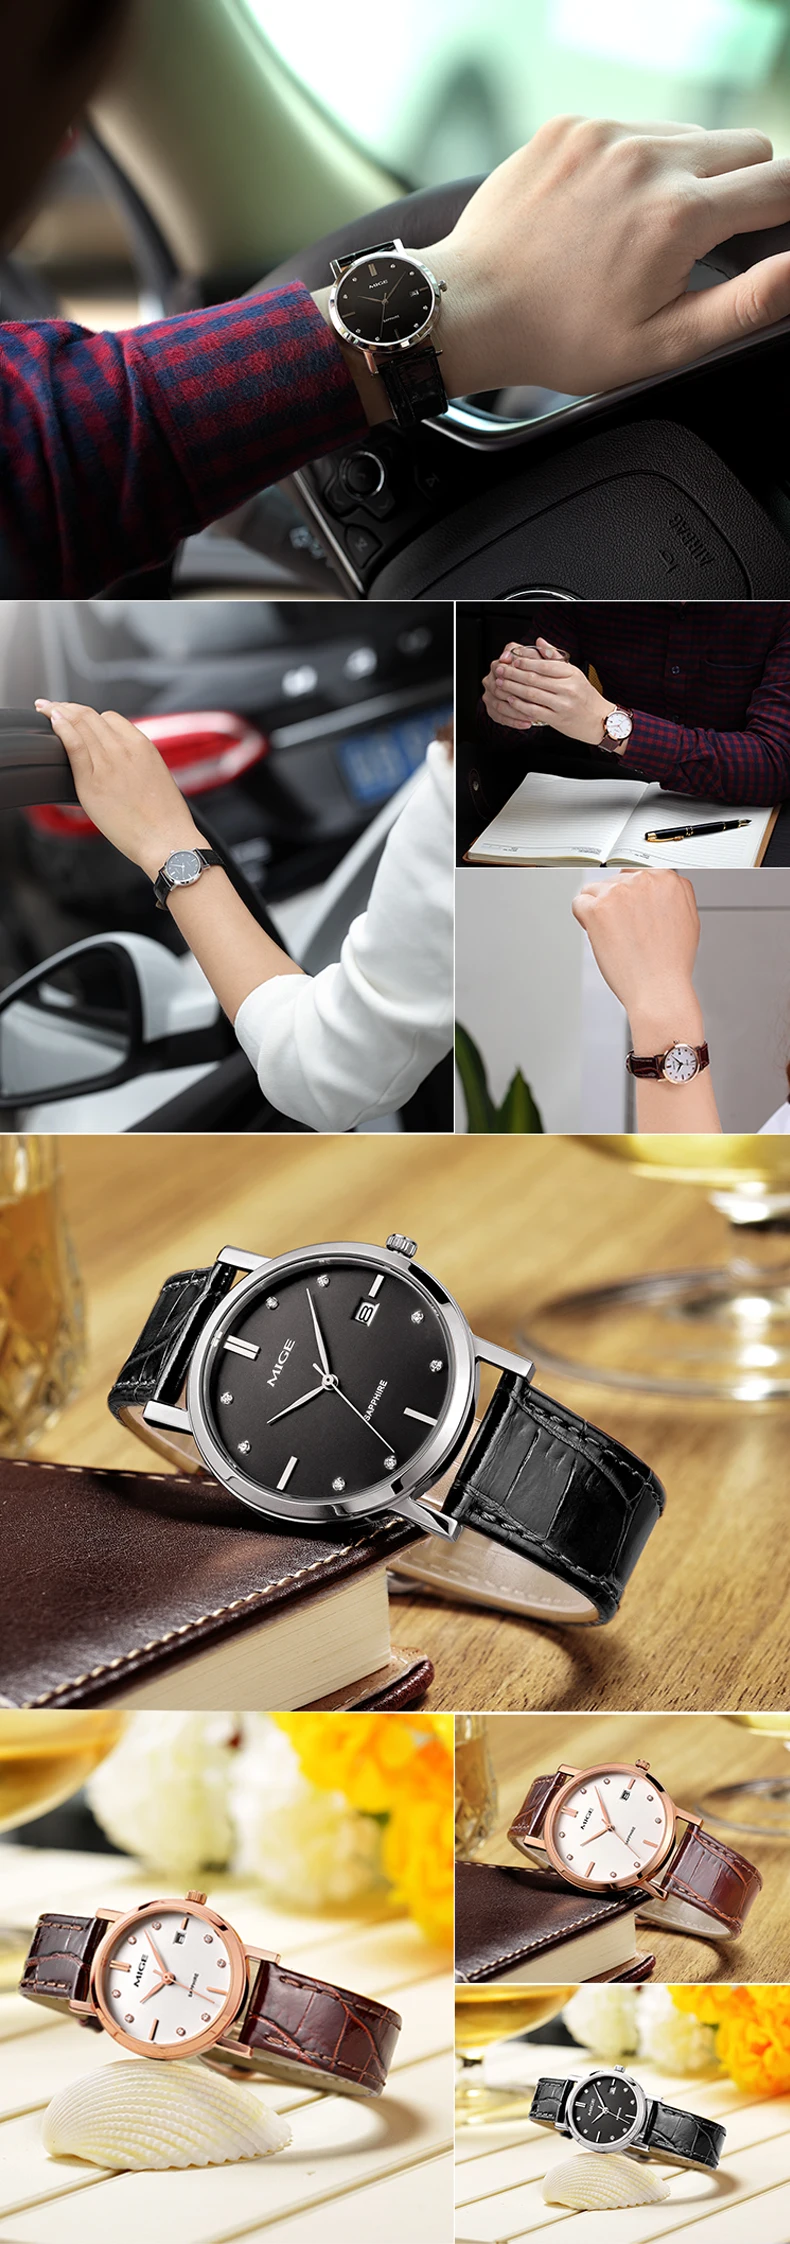 Топ бренд новая распродажа Mige женские часы черный белый Saphire Циферблат Водонепроницаемые женские часы кварцевый механизм Женские наручные часы